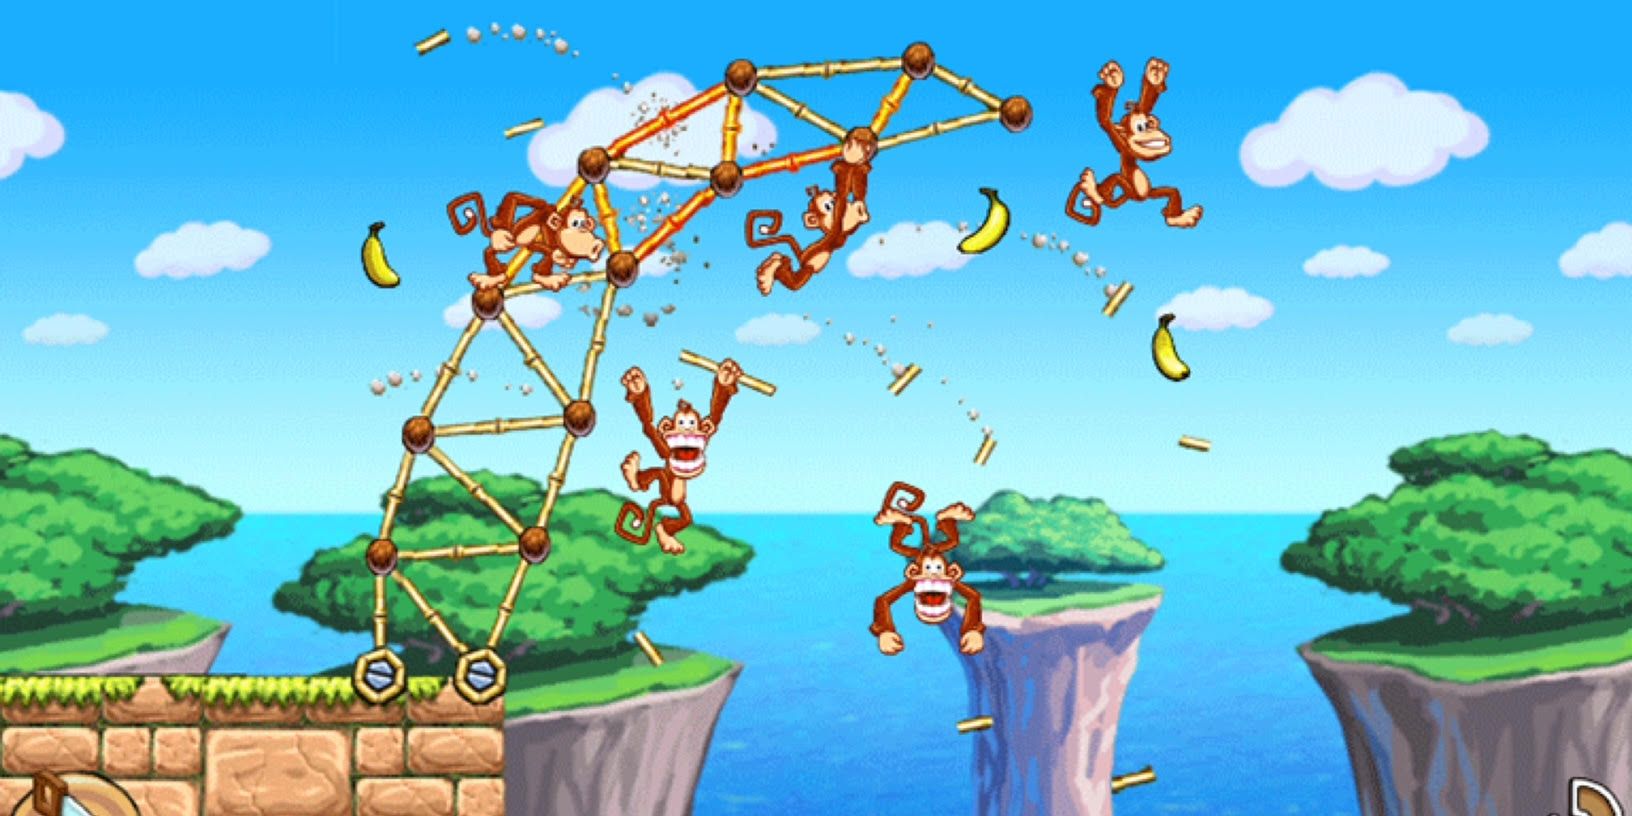 Tiki Towers gameplay